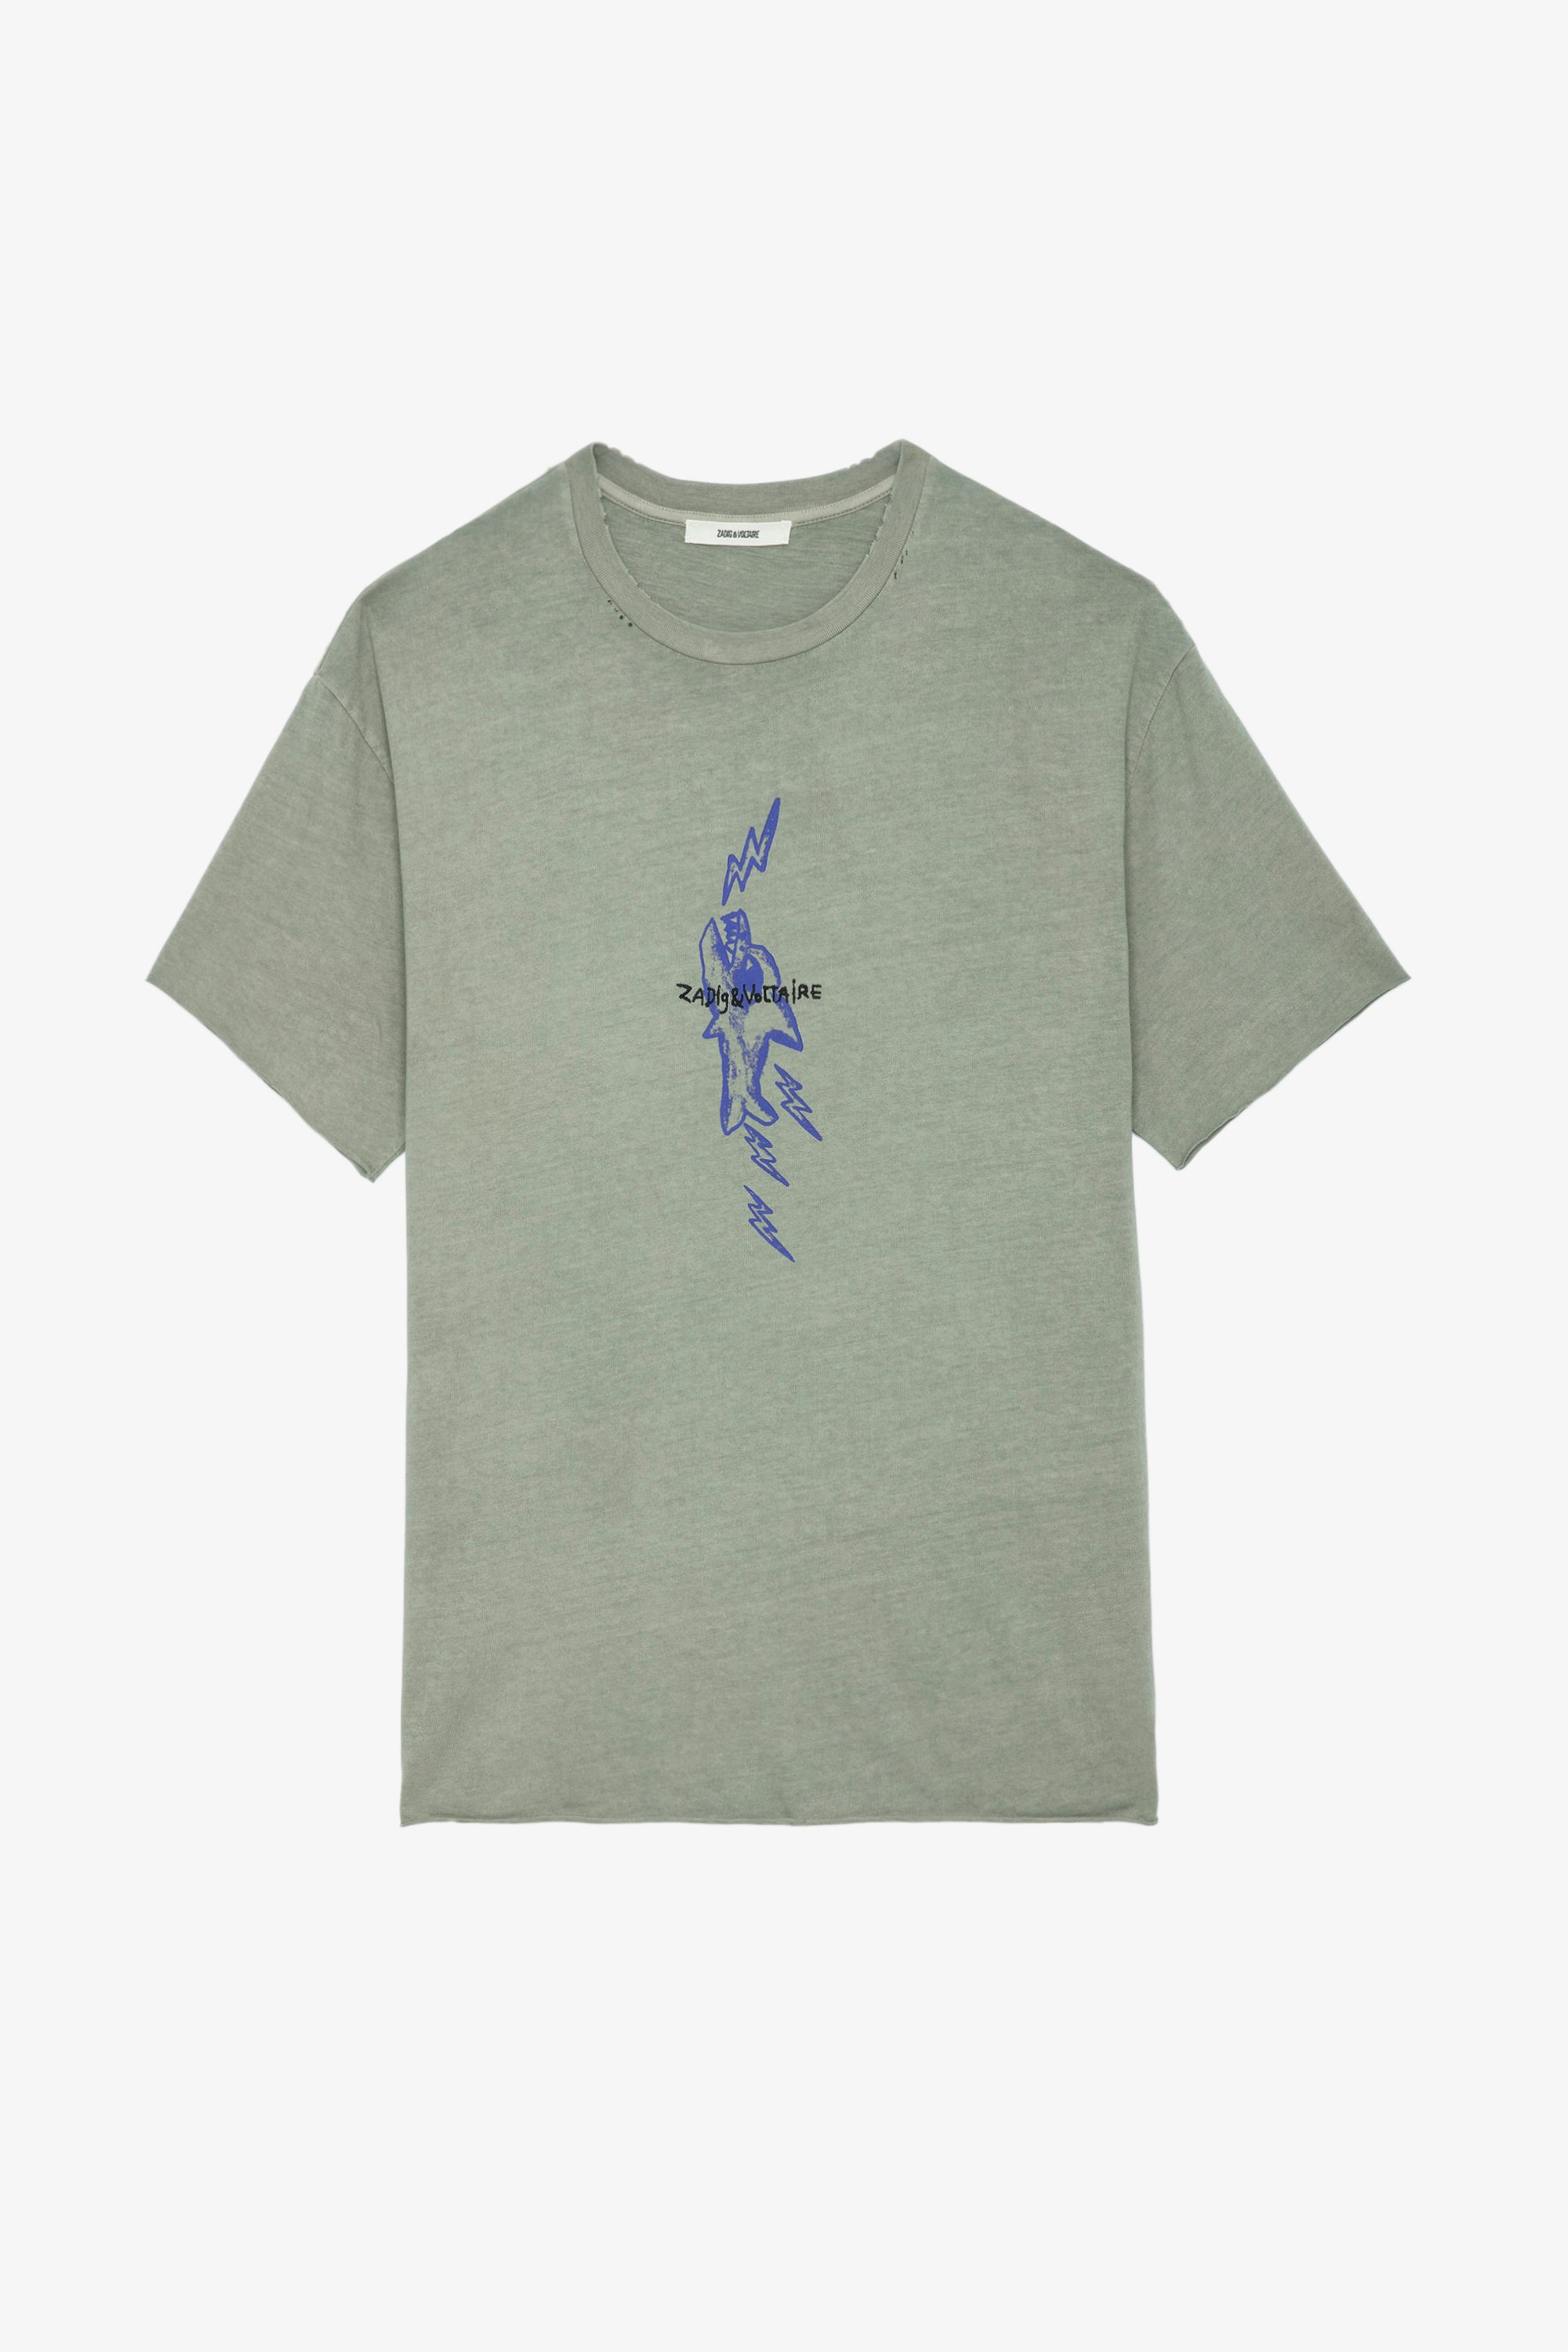 Camiseta Thilo - Camiseta gris de manga corta con efecto rasgado y estampado de tiburón.